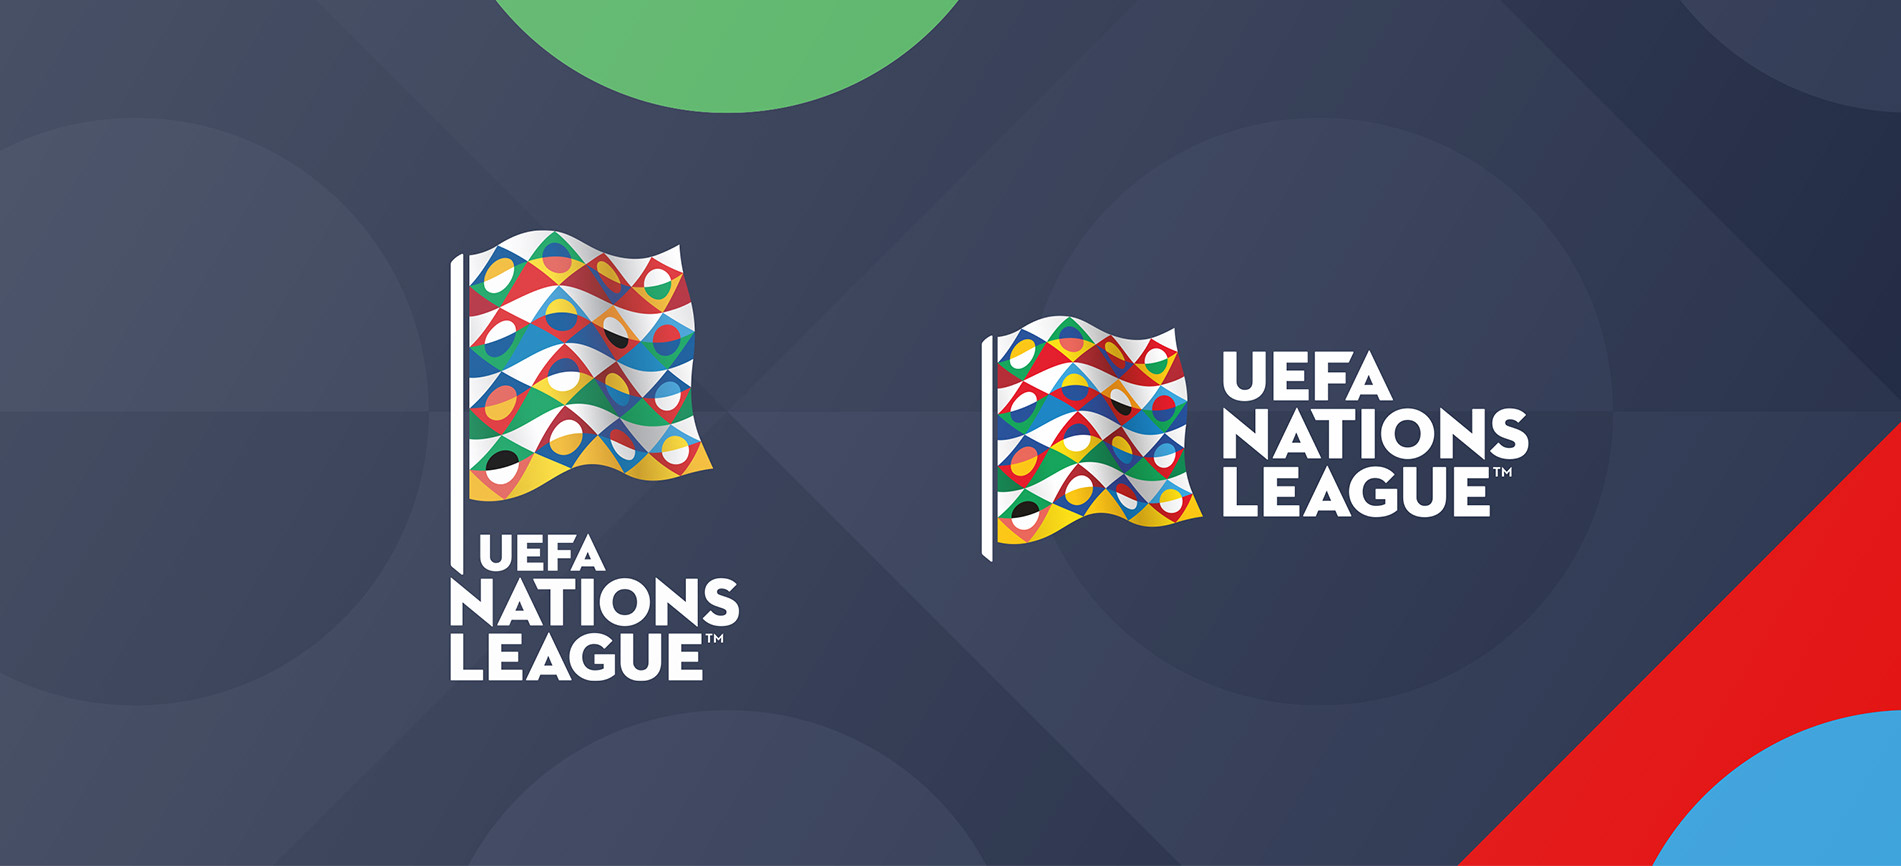 Ejemplo de fuente UEFA Nations